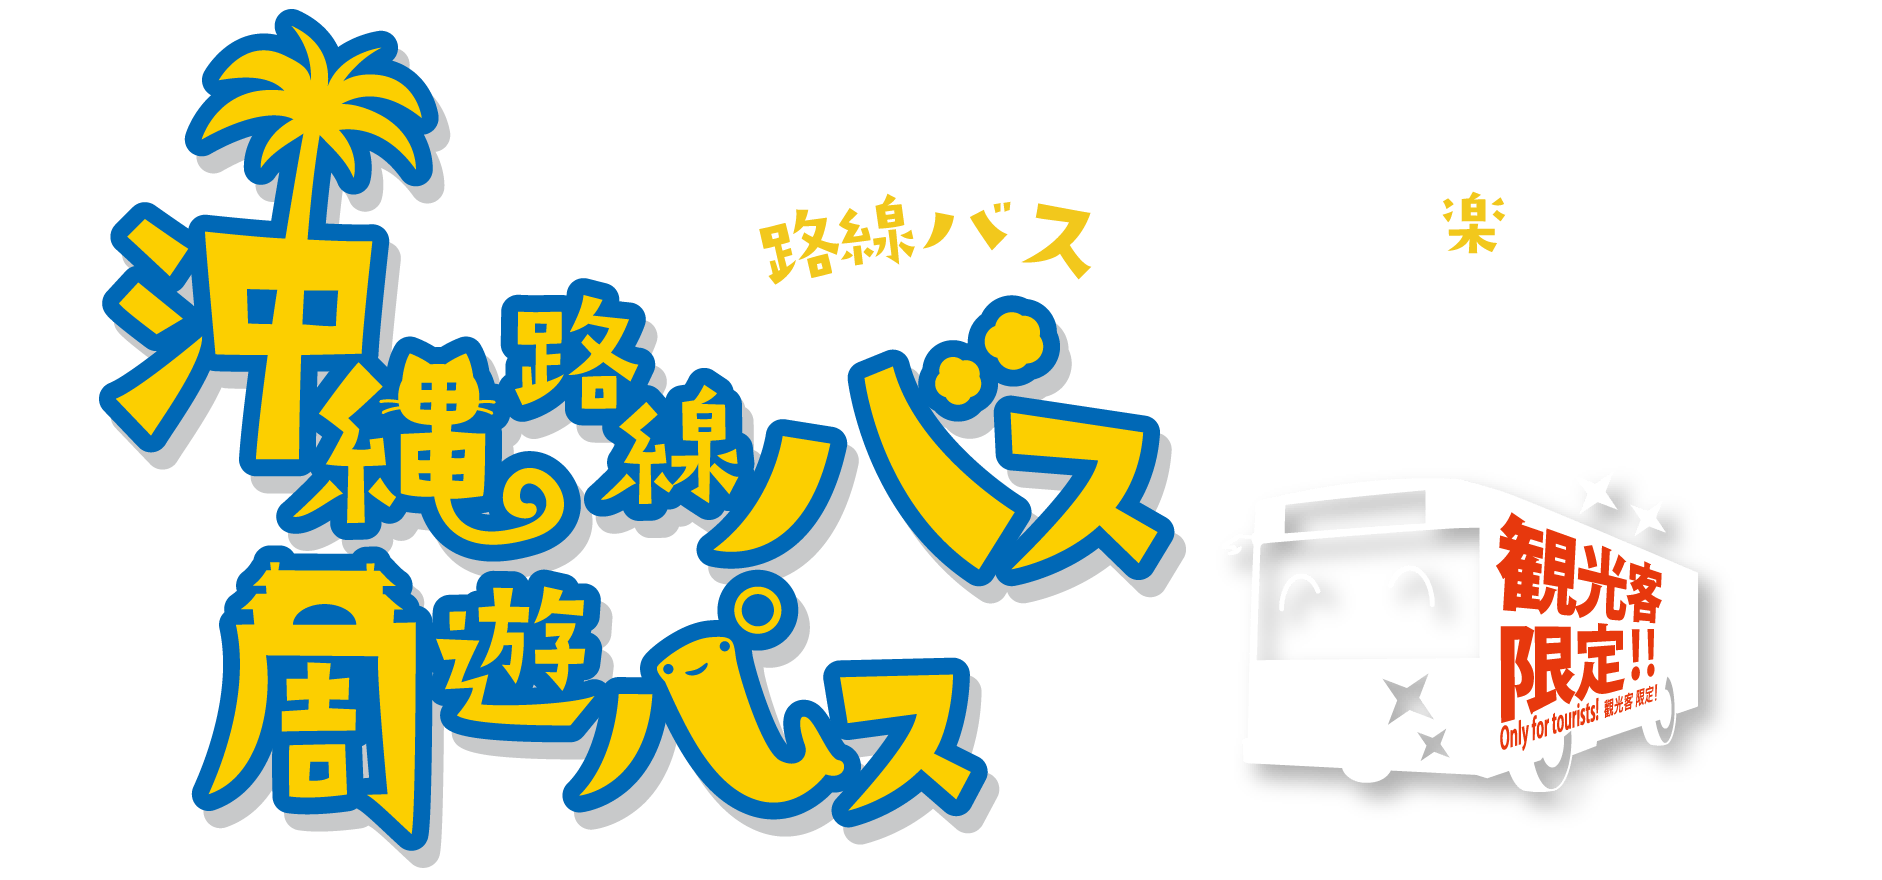 沖縄路線バス周遊パス